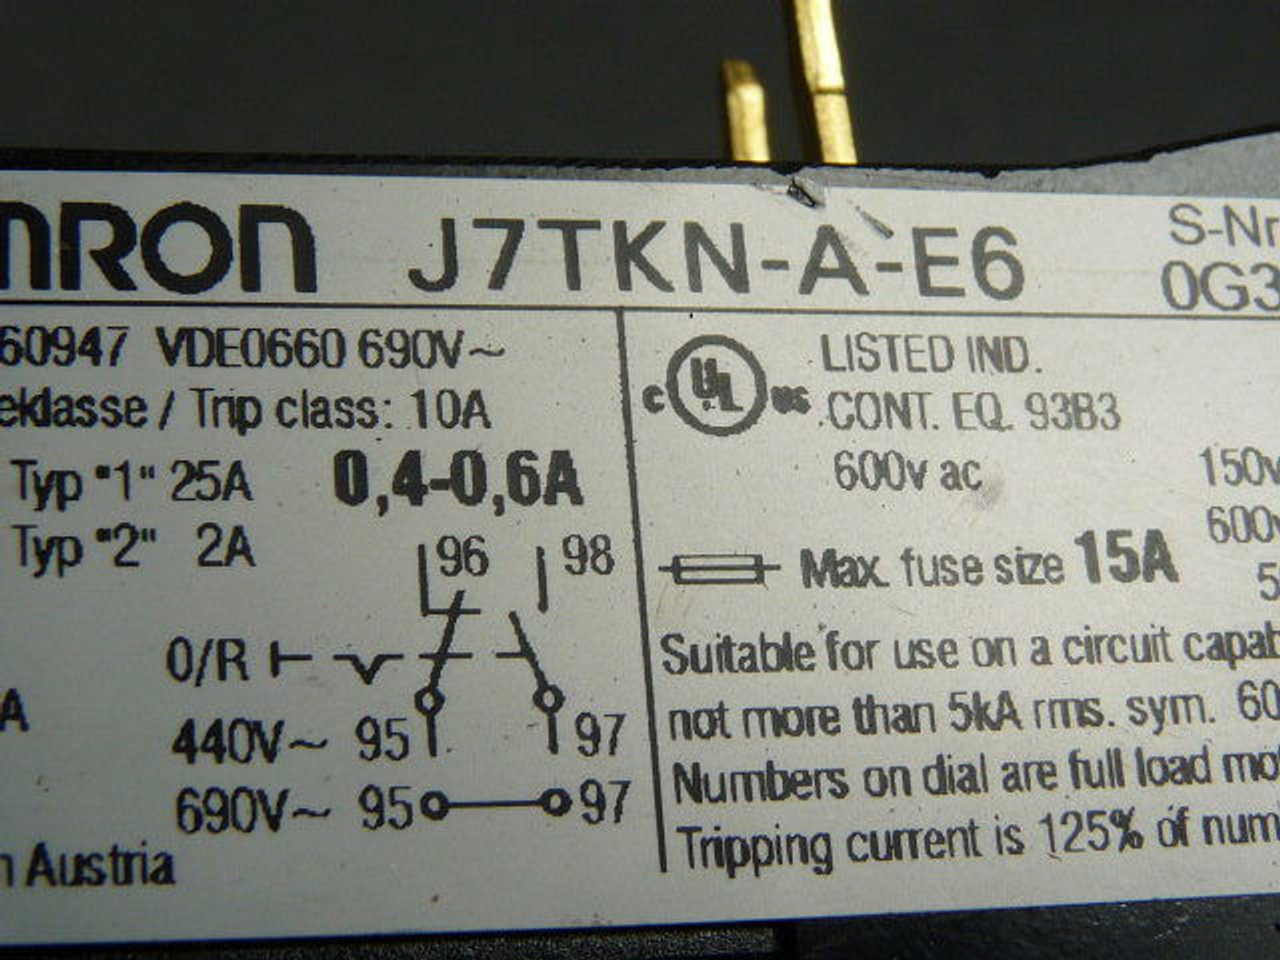 Omron J7TKN-A-E6 Overload Relay 3-Pole 0.4-0.6A USED